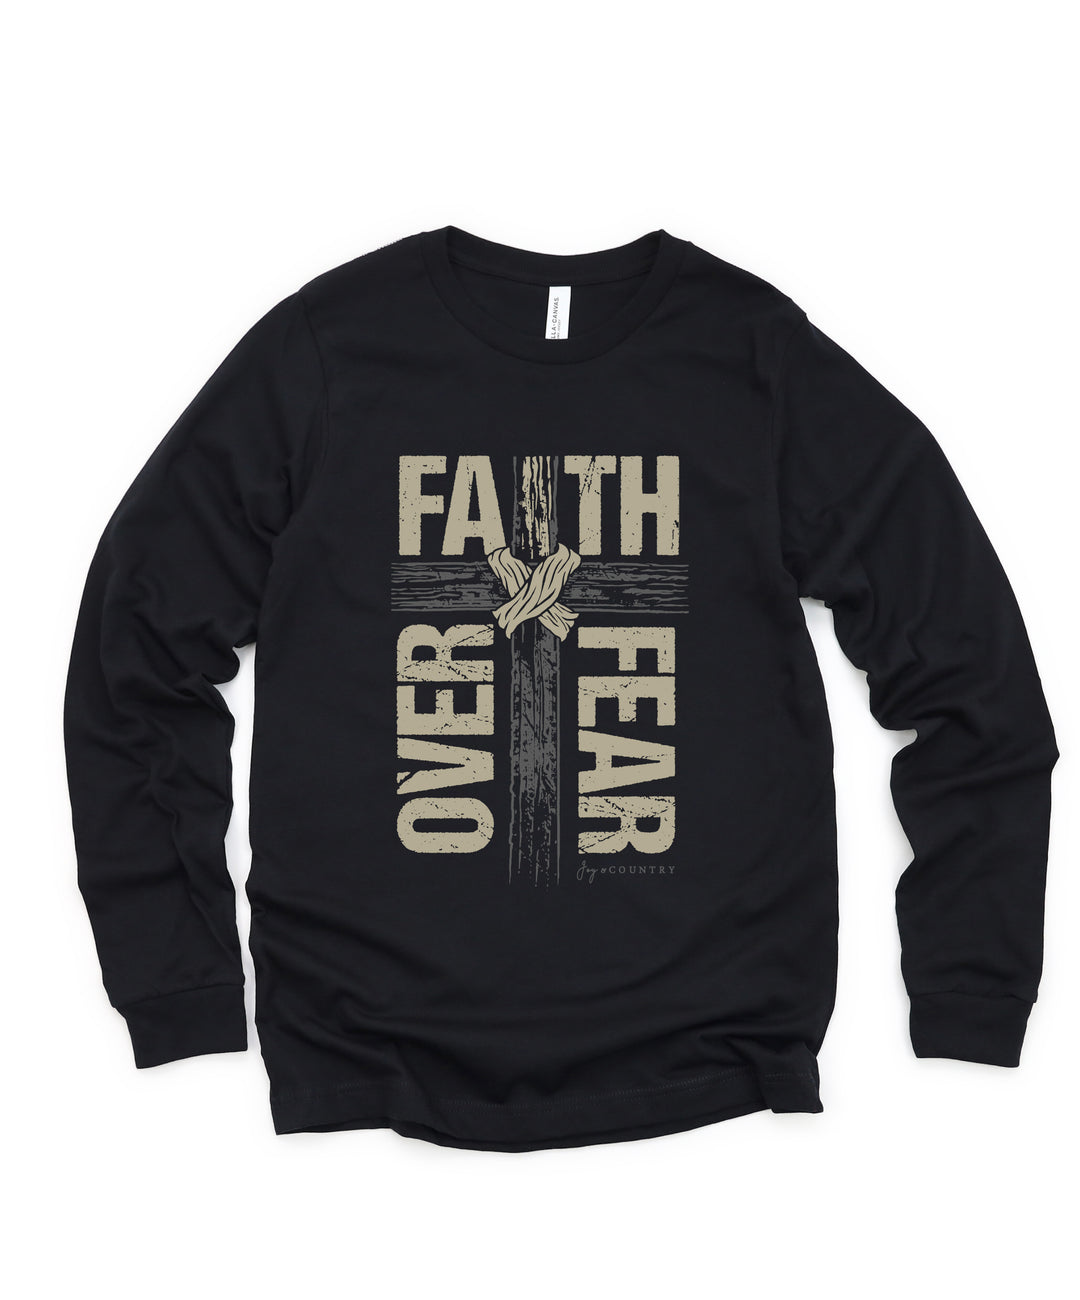 Faith Over Fear - Unisex Jersey Long Sleeve Tee